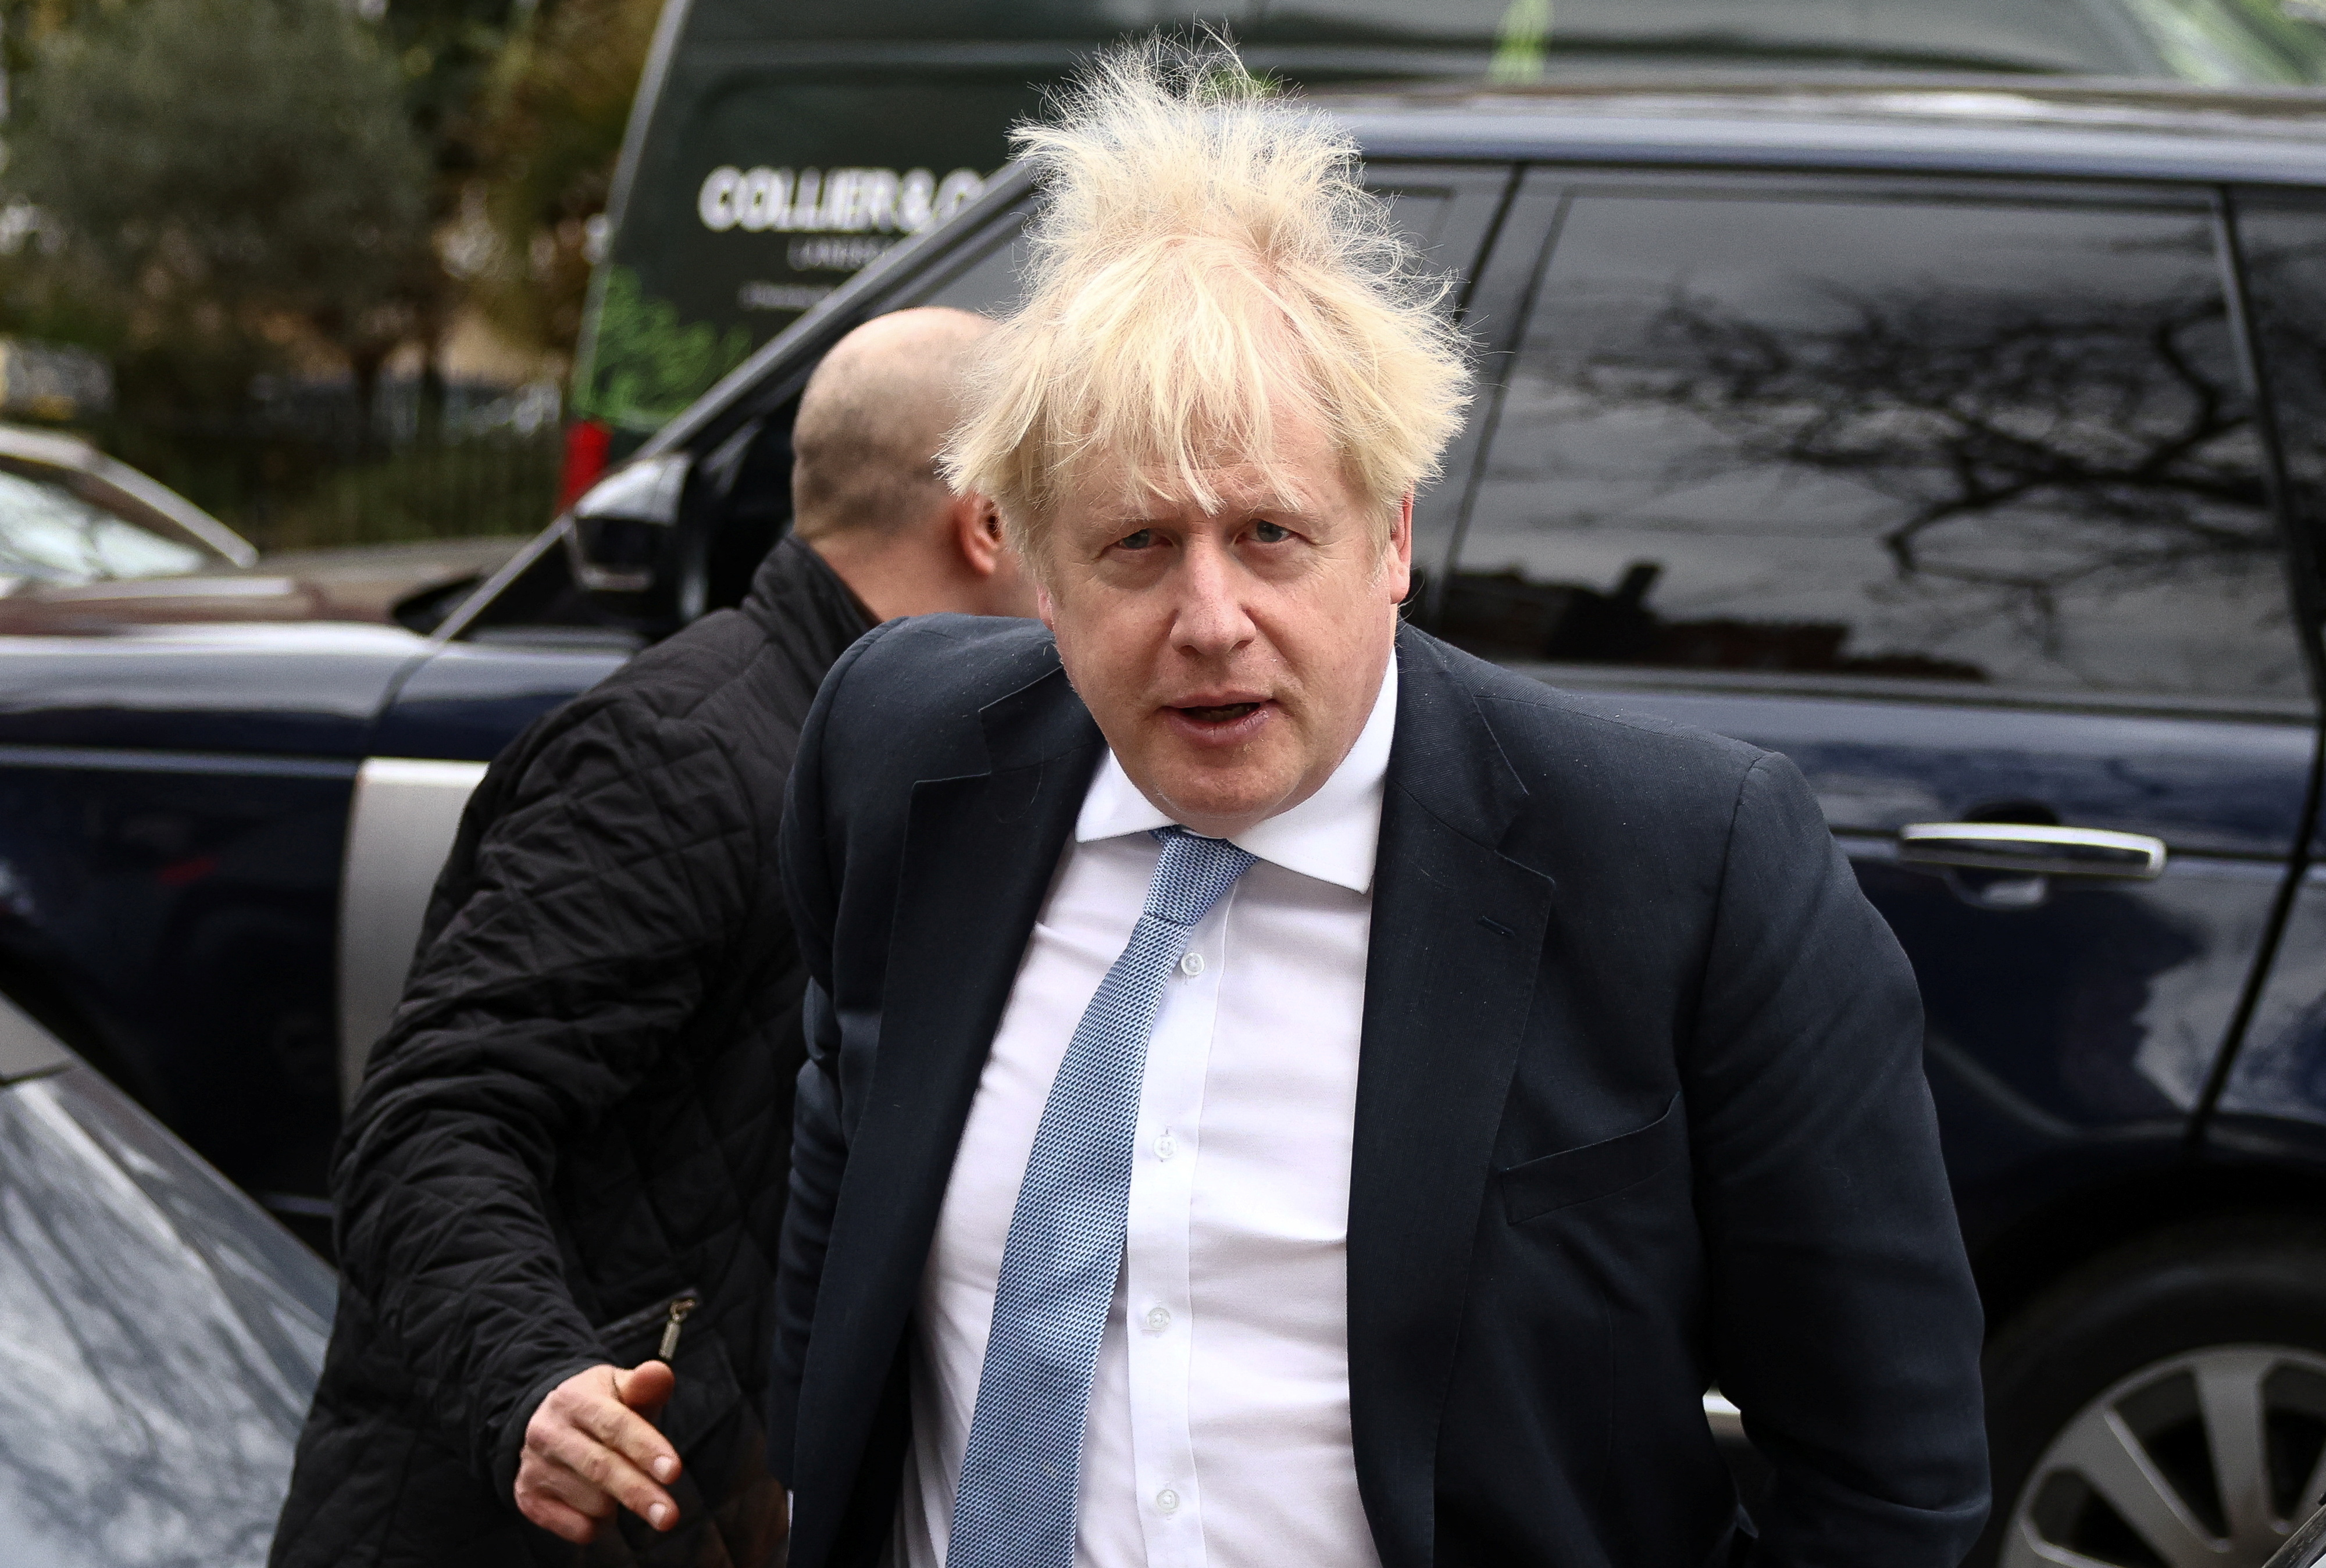 El curioso descargo de Boris Johnson sobre las fiestas durante la pandemia: “Los llevé al engaño, pero lo hice de buena fe”